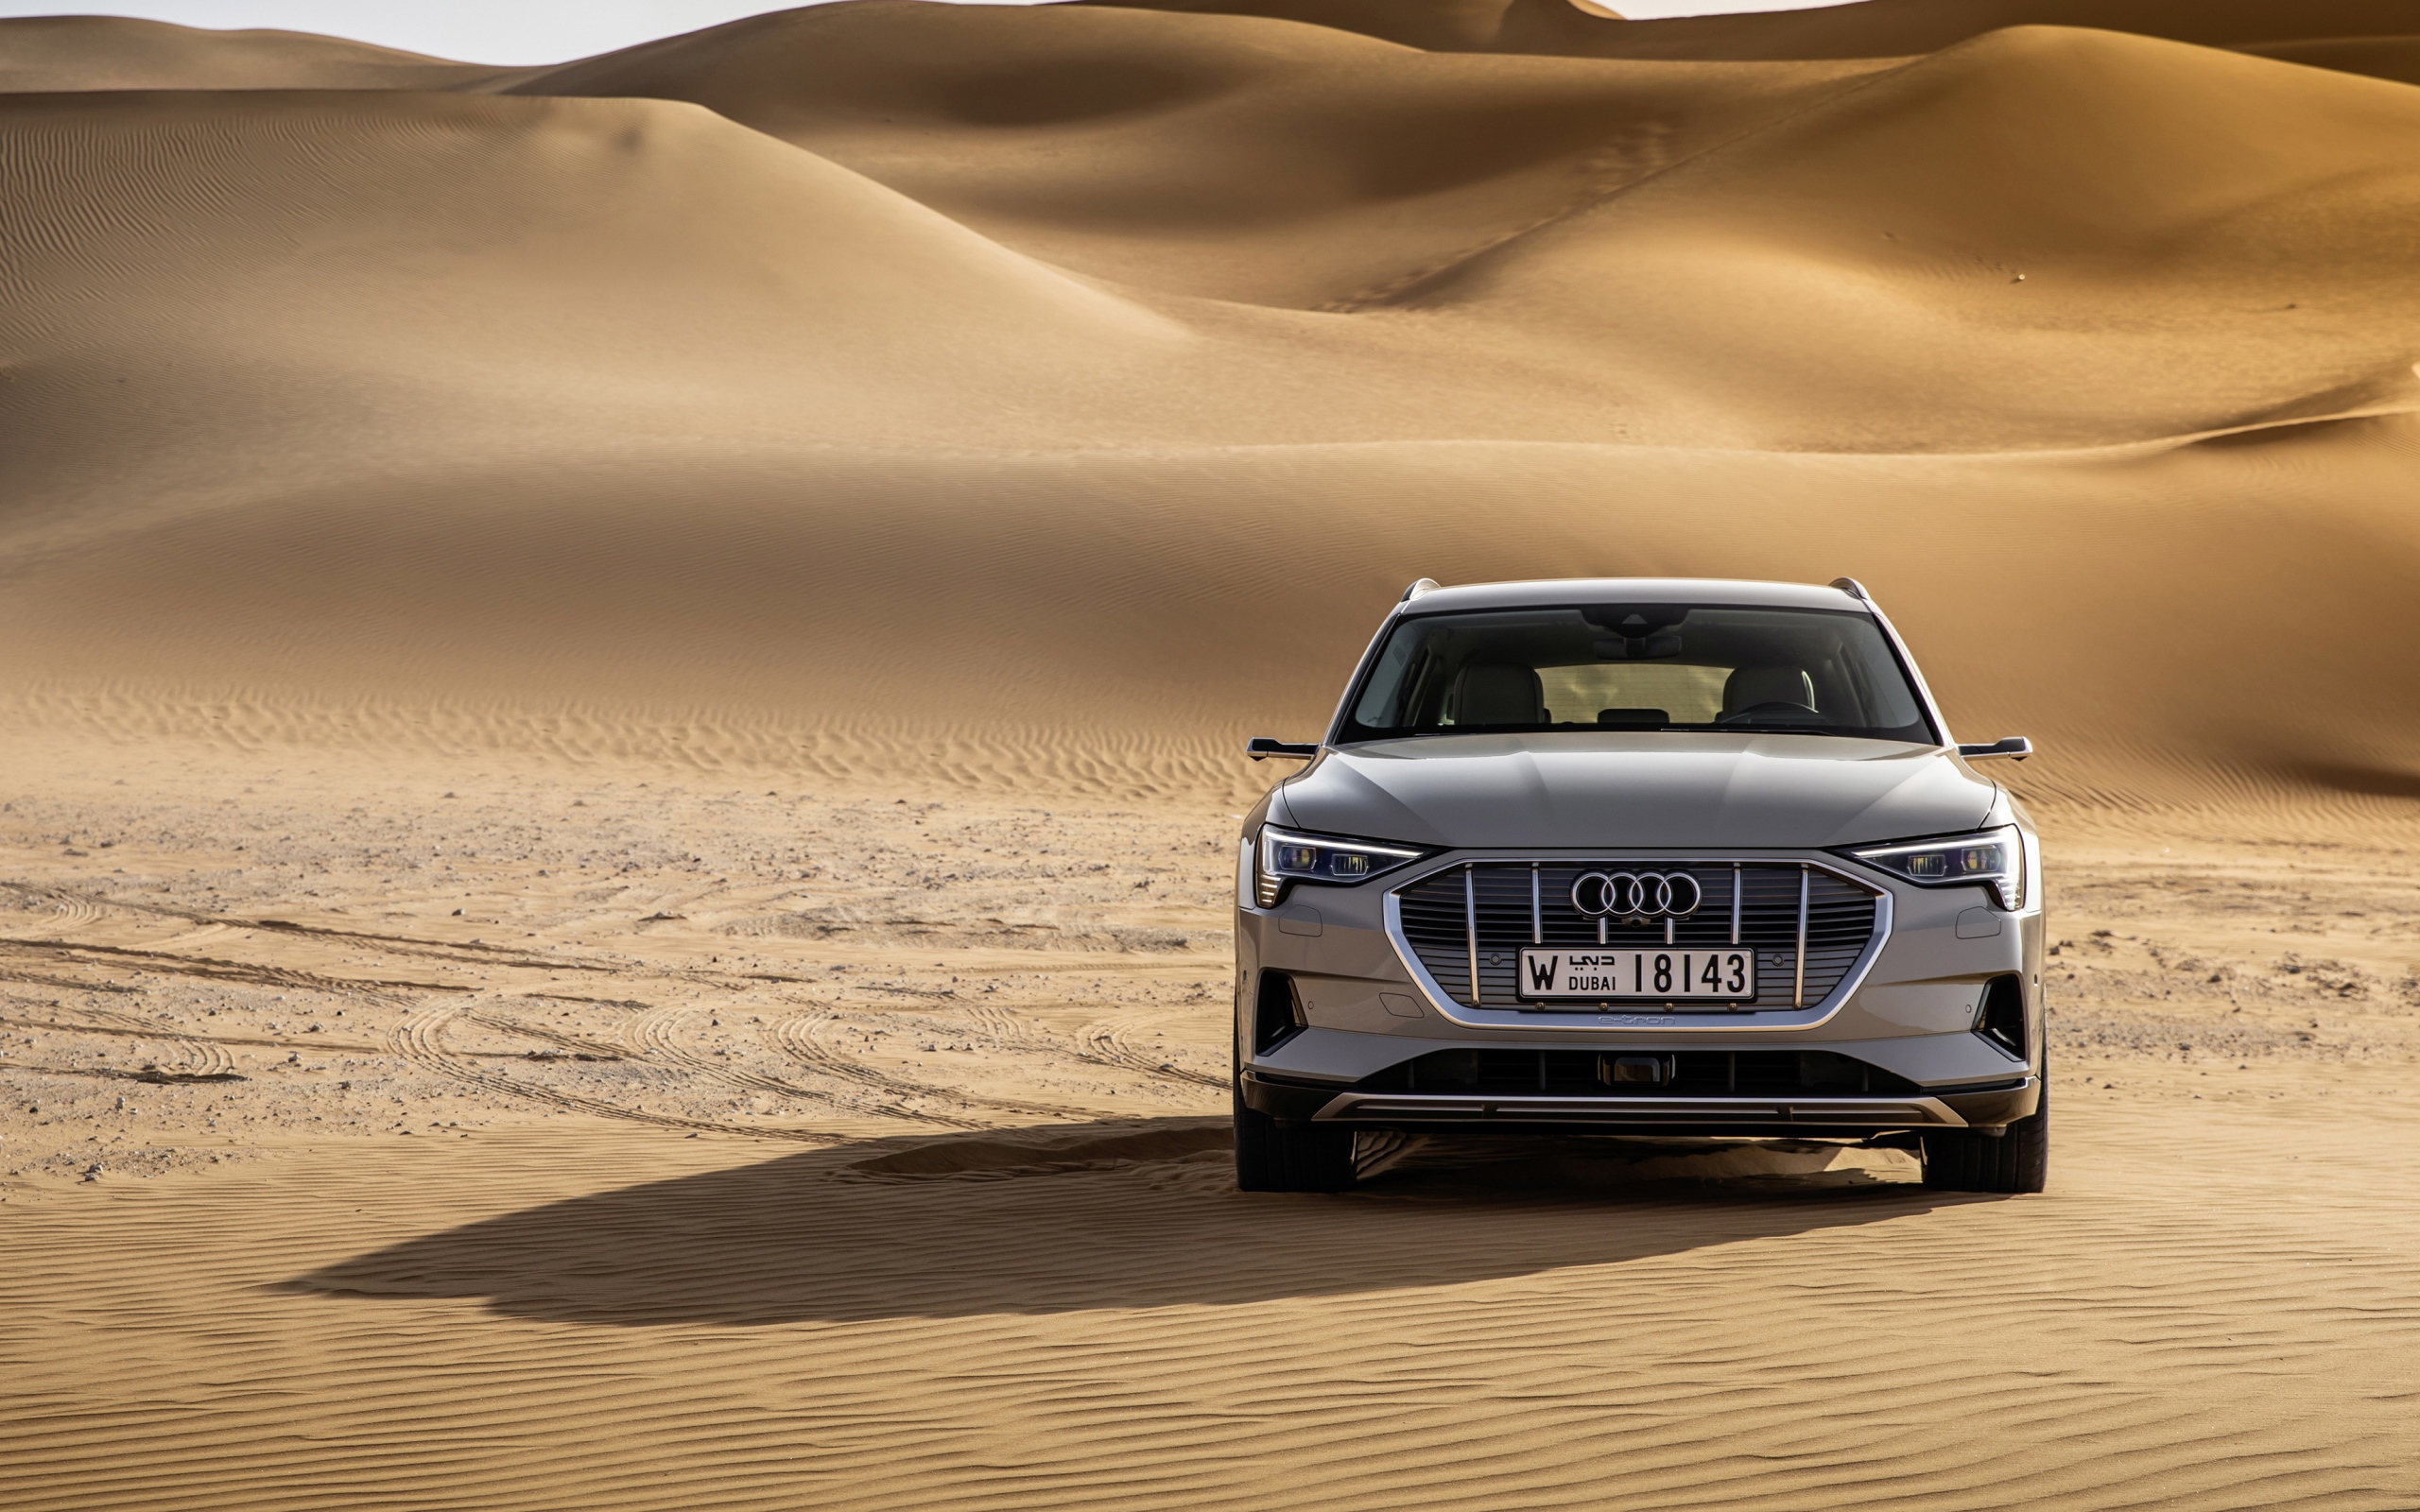 Silver car Audi E-tron Quattro in the desert